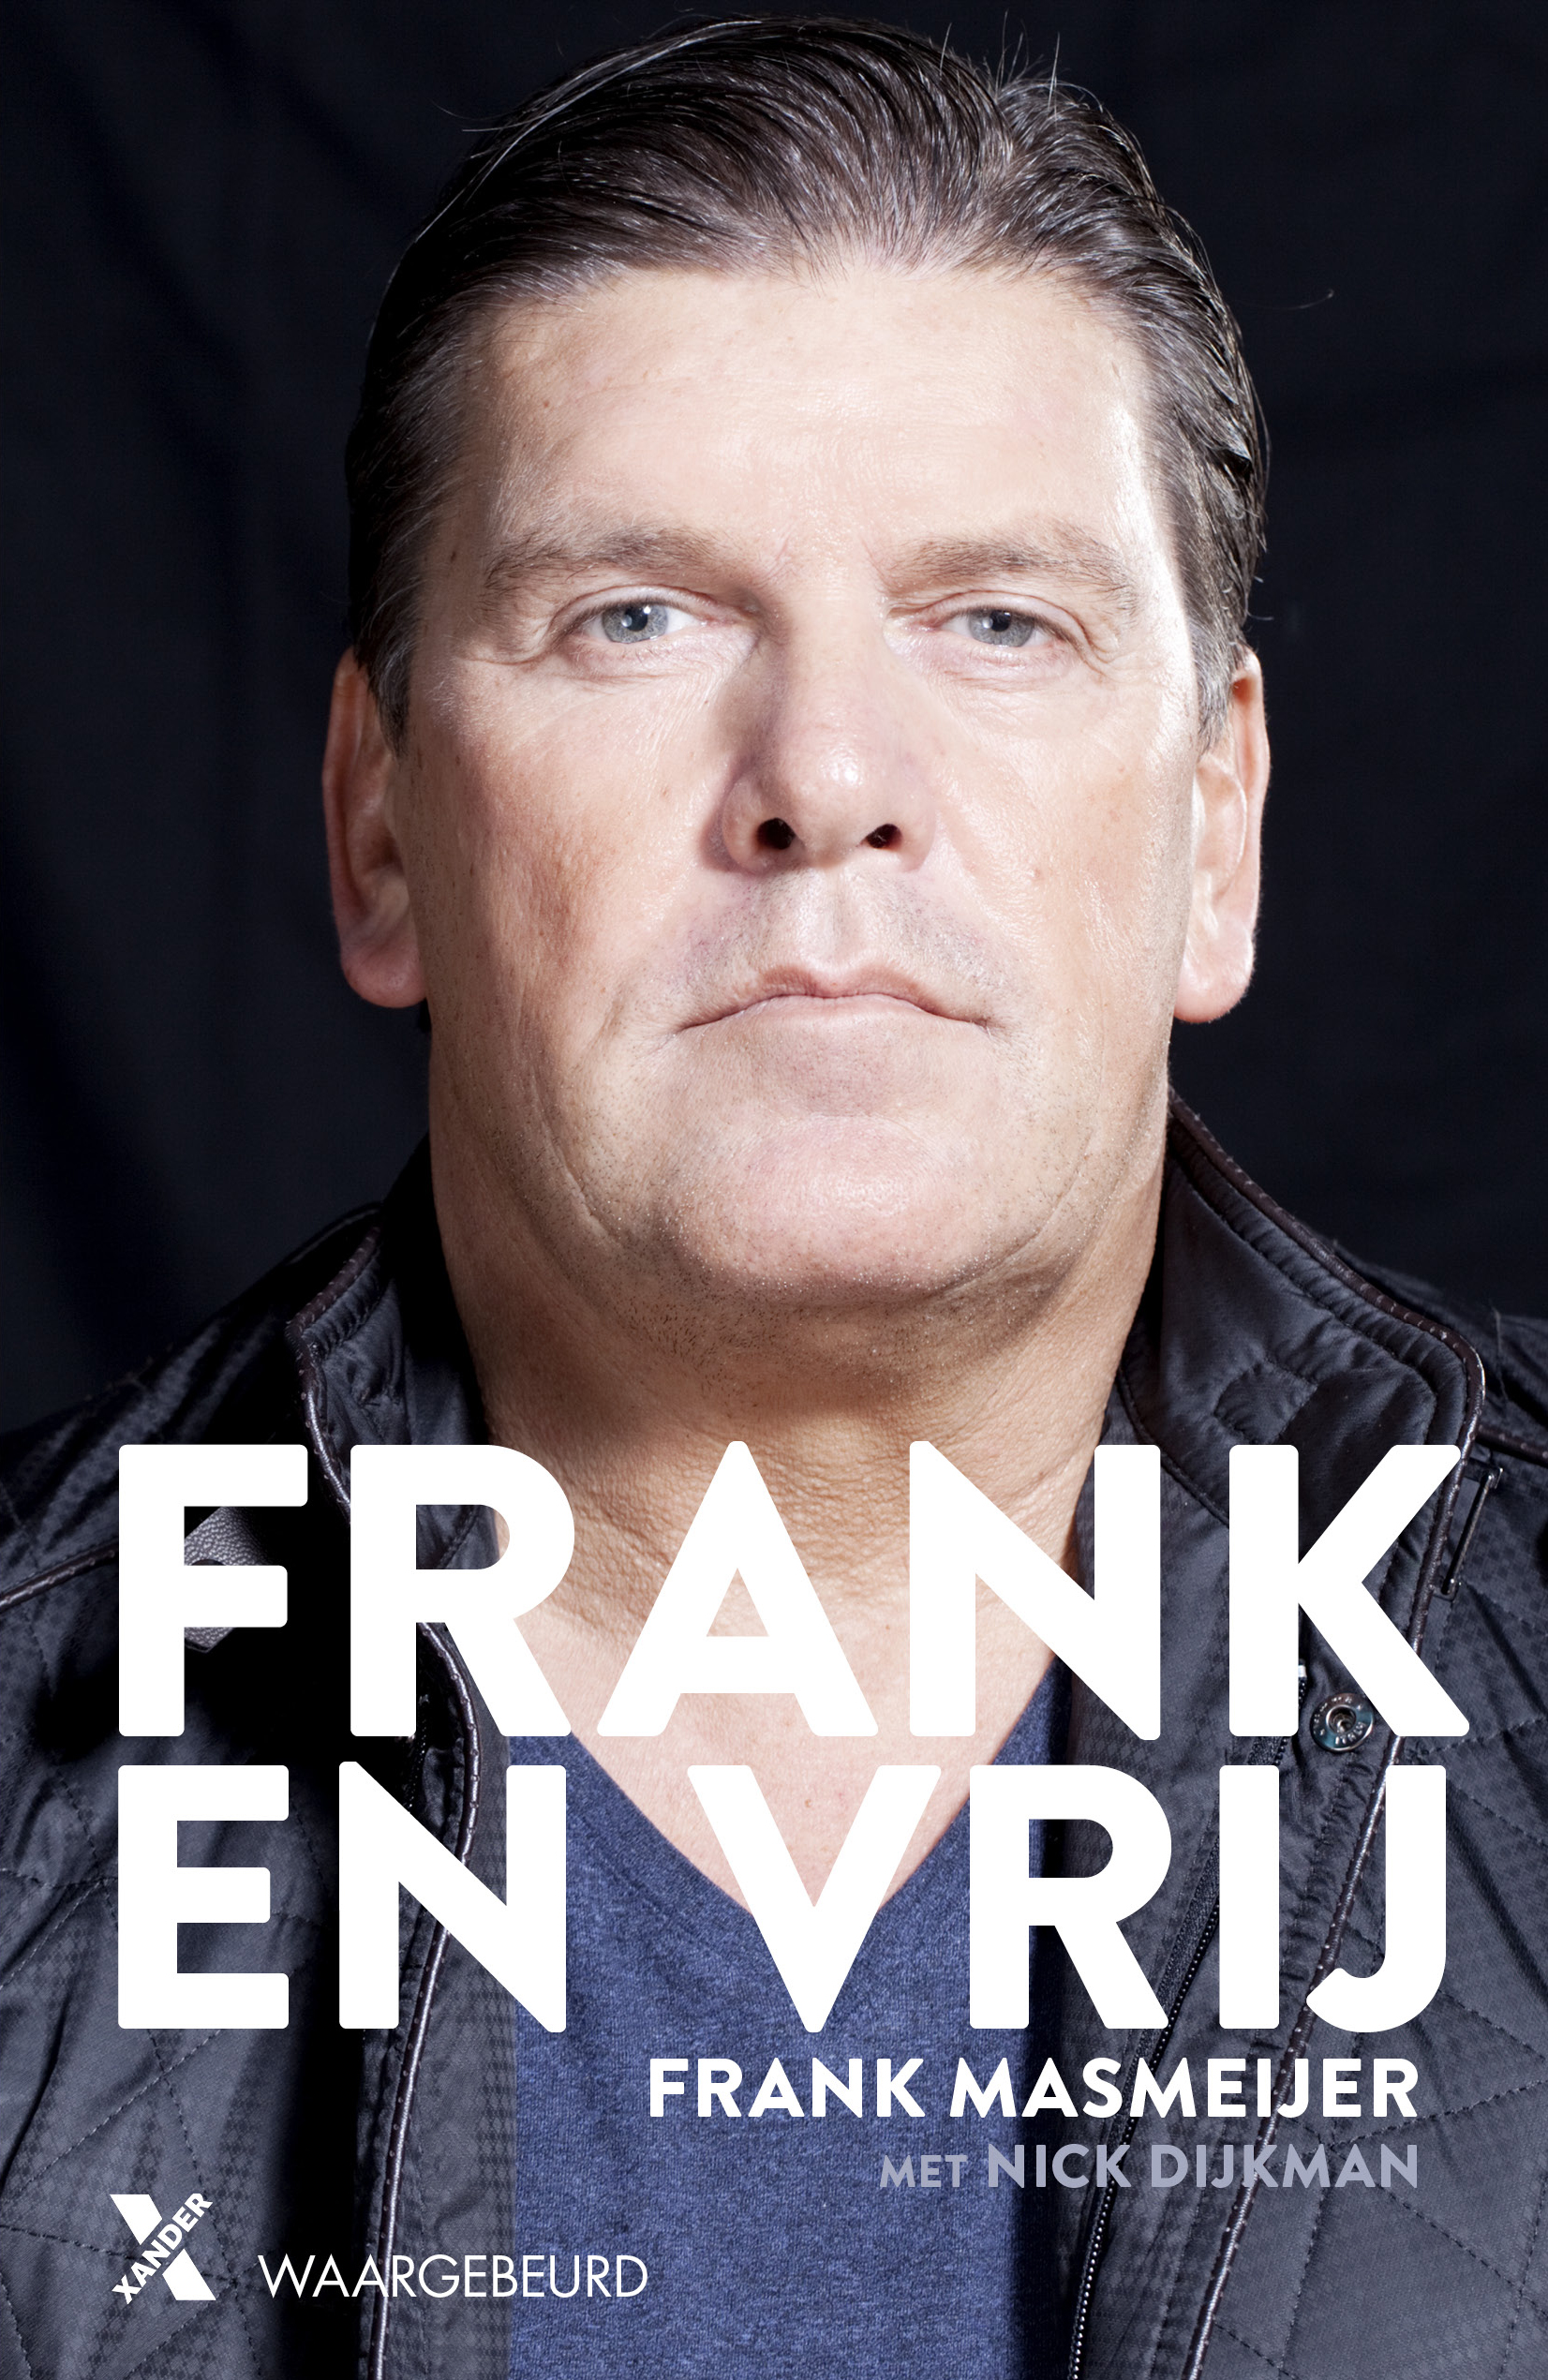 Boek Frank en vrij van Frank Masmeijer